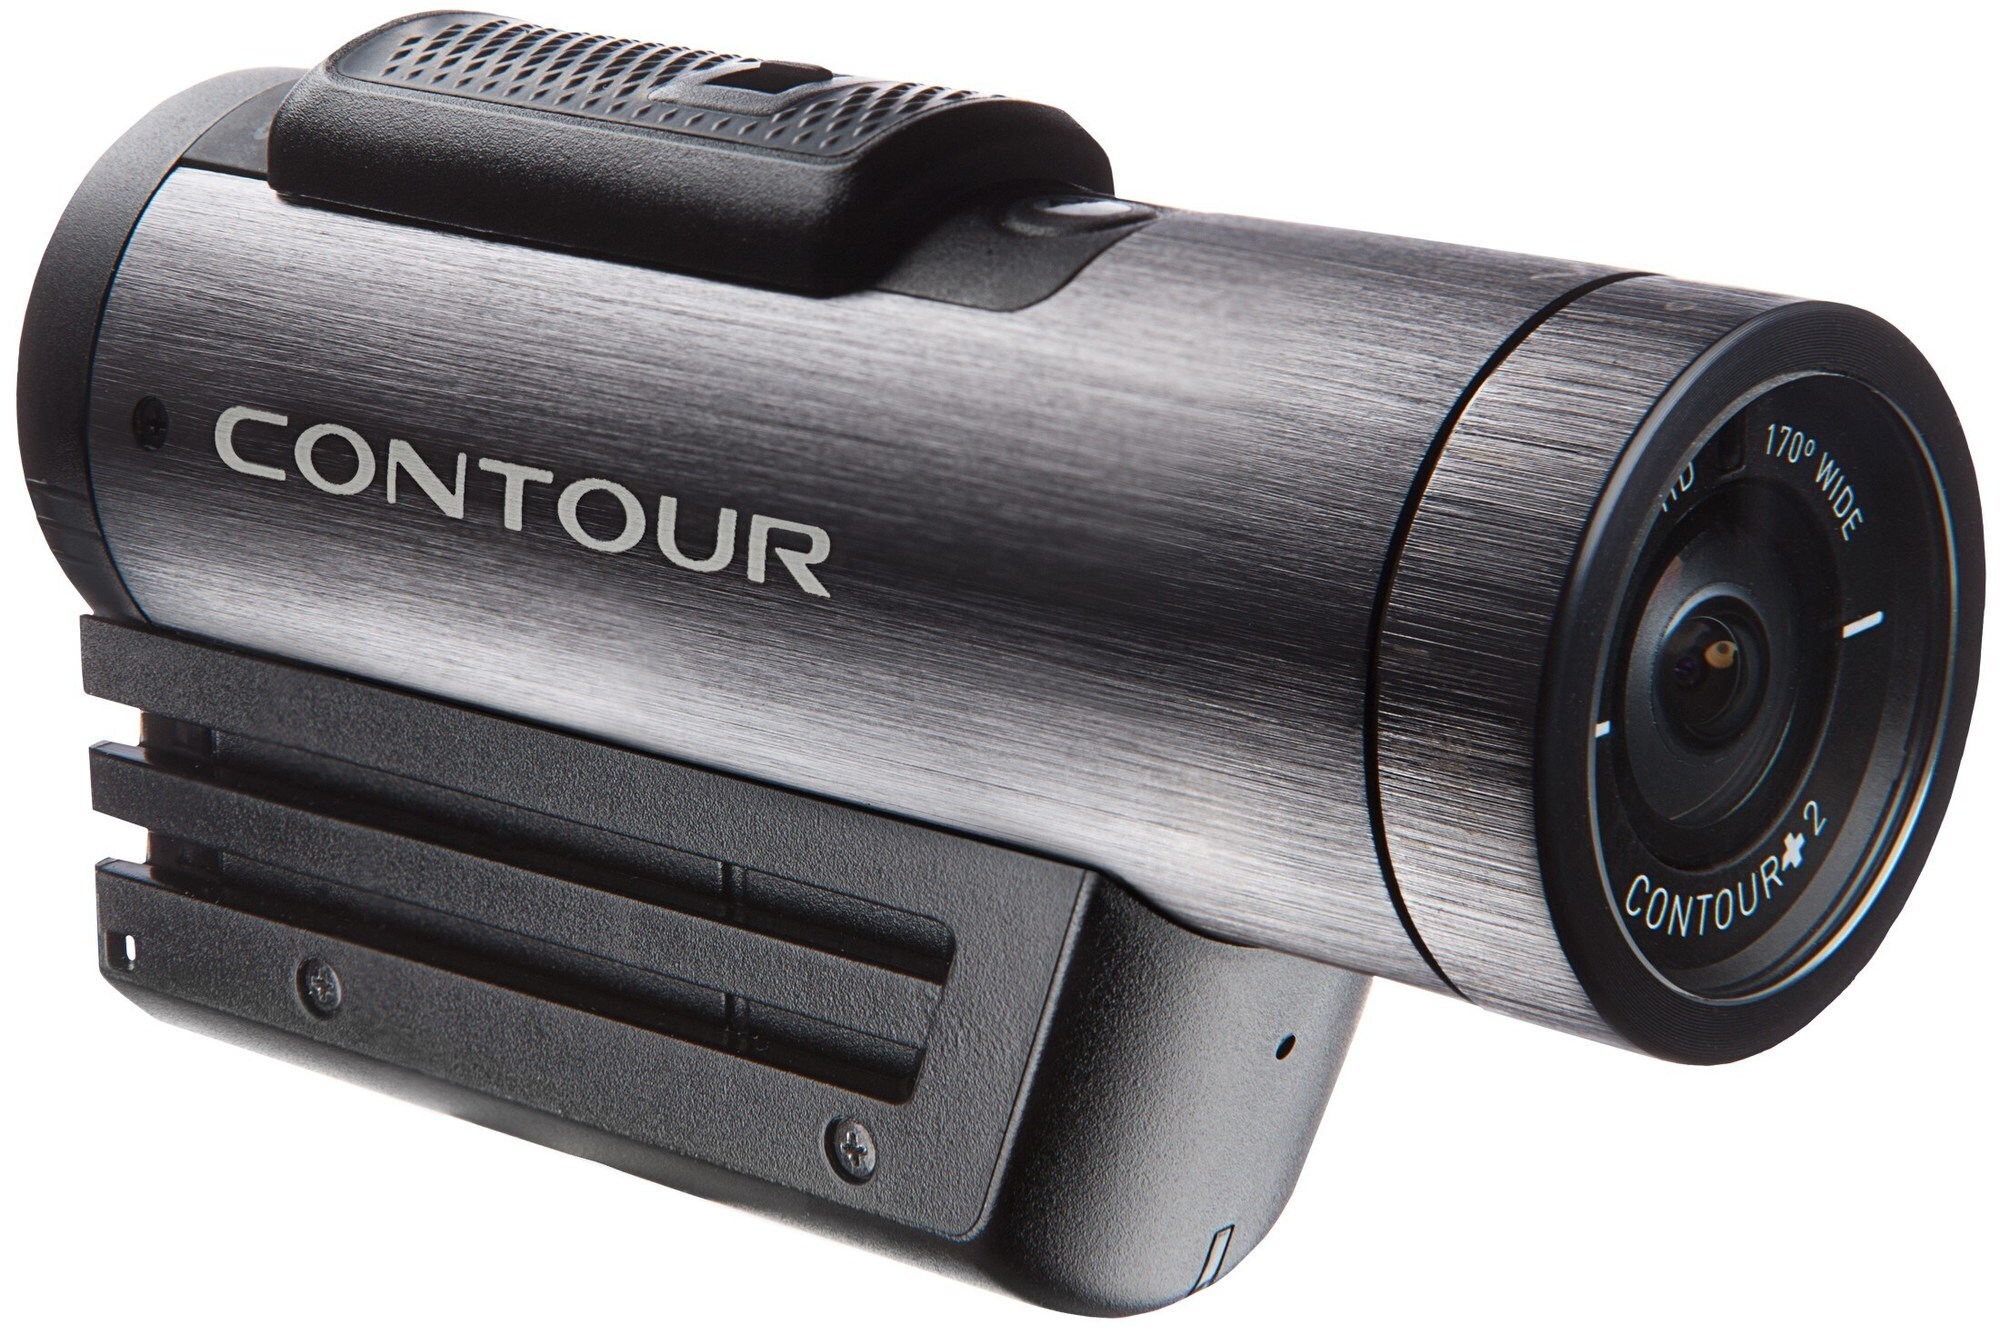 Contour+2 actionvideokamera - Gigantti verkkokauppa